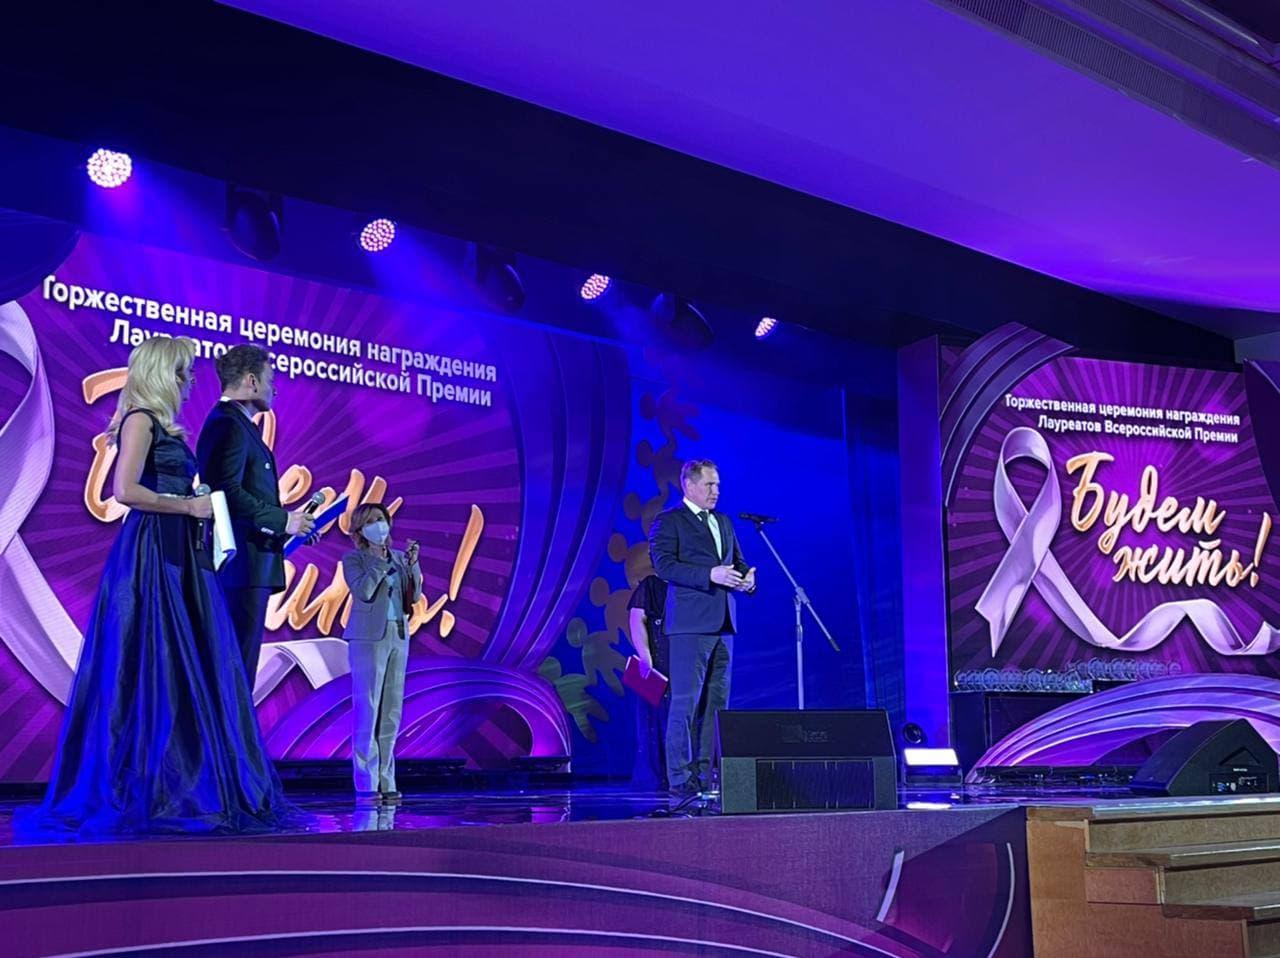 Министр здравоохранения Михаил Мурашко принял участие в Церемонии награждения Всероссийской премией «Будем жить!»